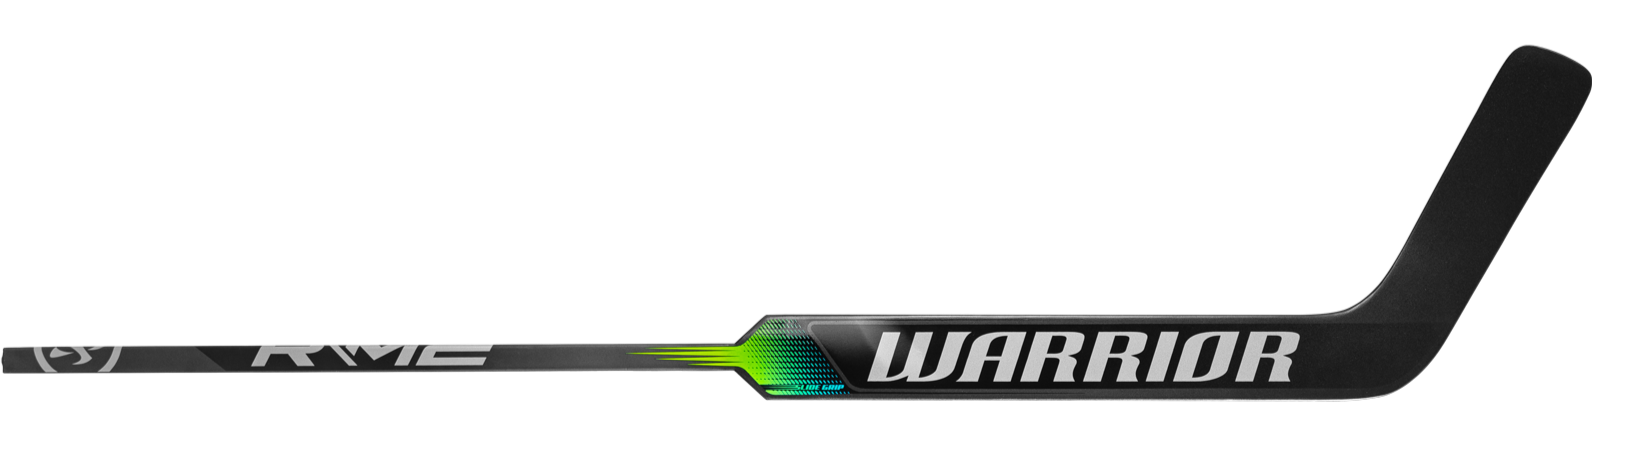 Warrior M2 E Intermediate Goalie Stick (Black / Silver)